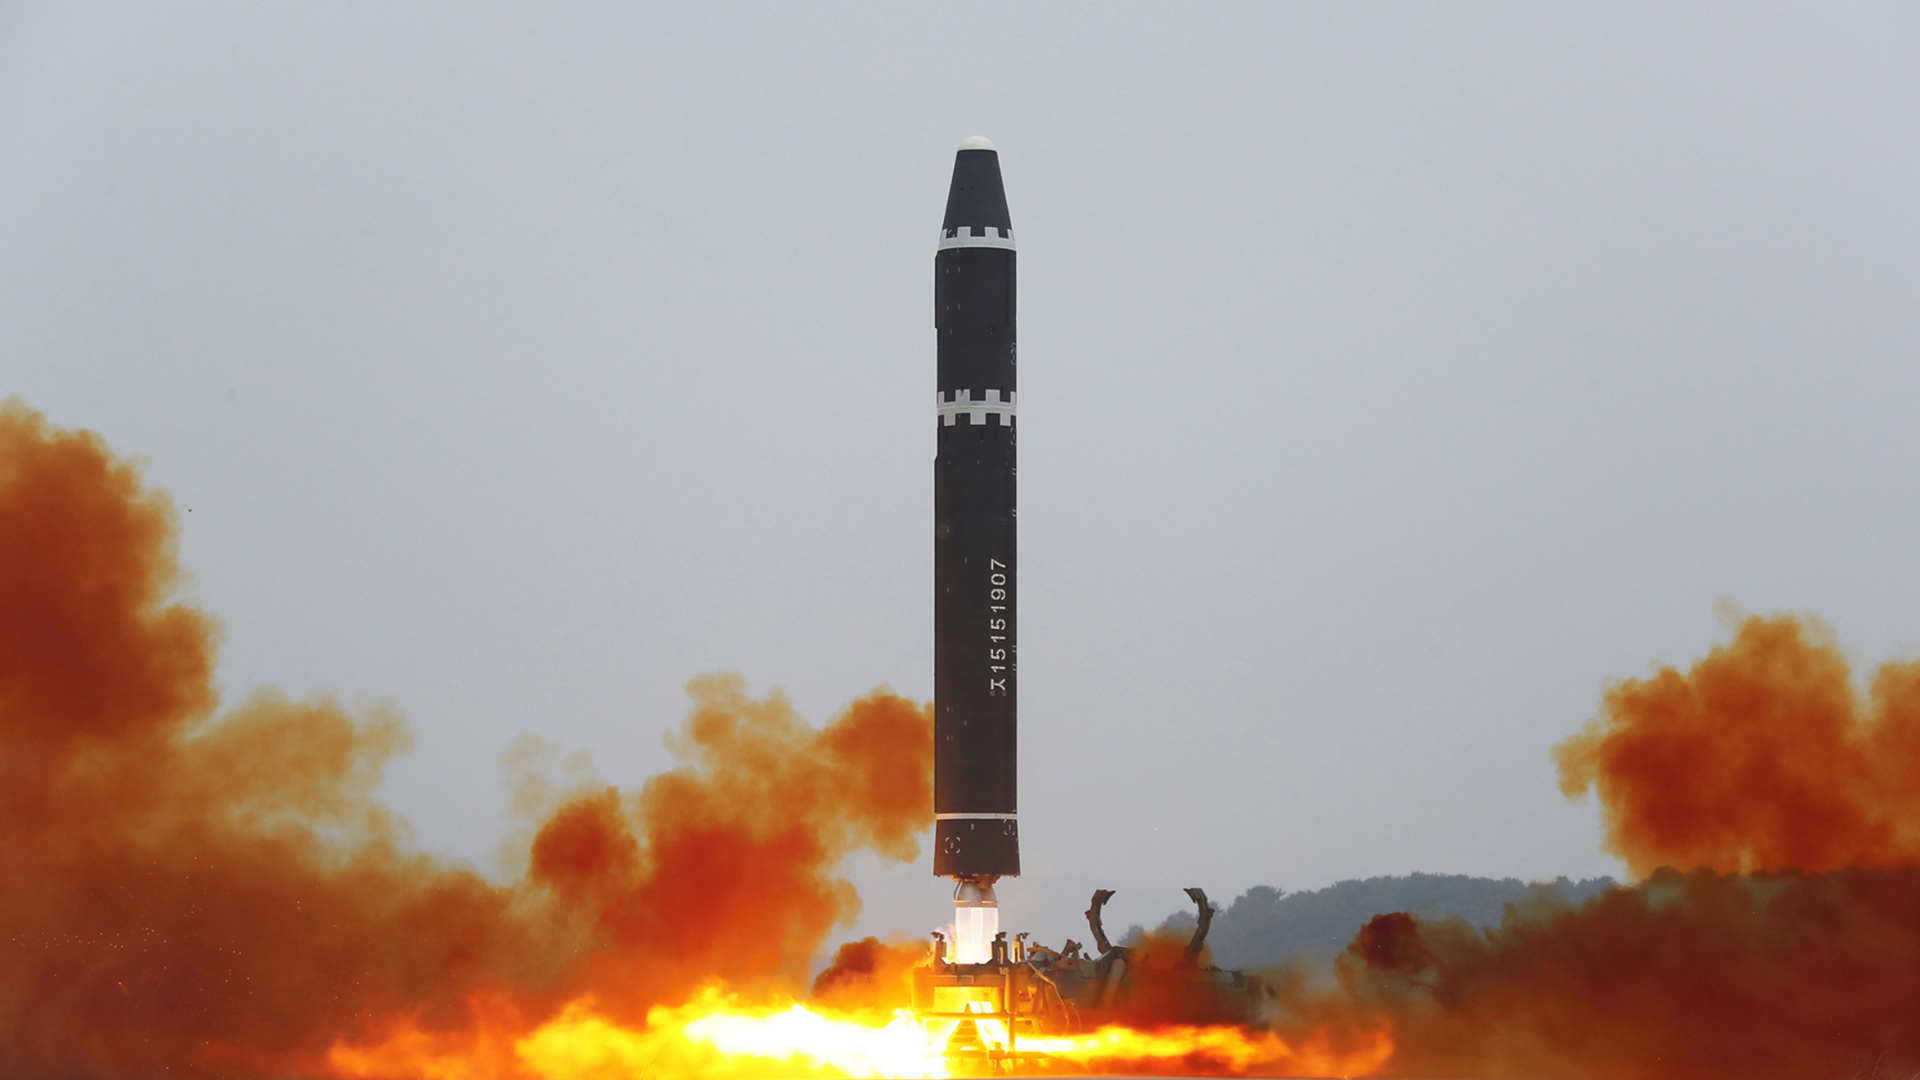 Eine Interkontinentalrakete beim Start in Nordkorea. | Bild: EPA/KCNA EDITORIAL USE ONLY